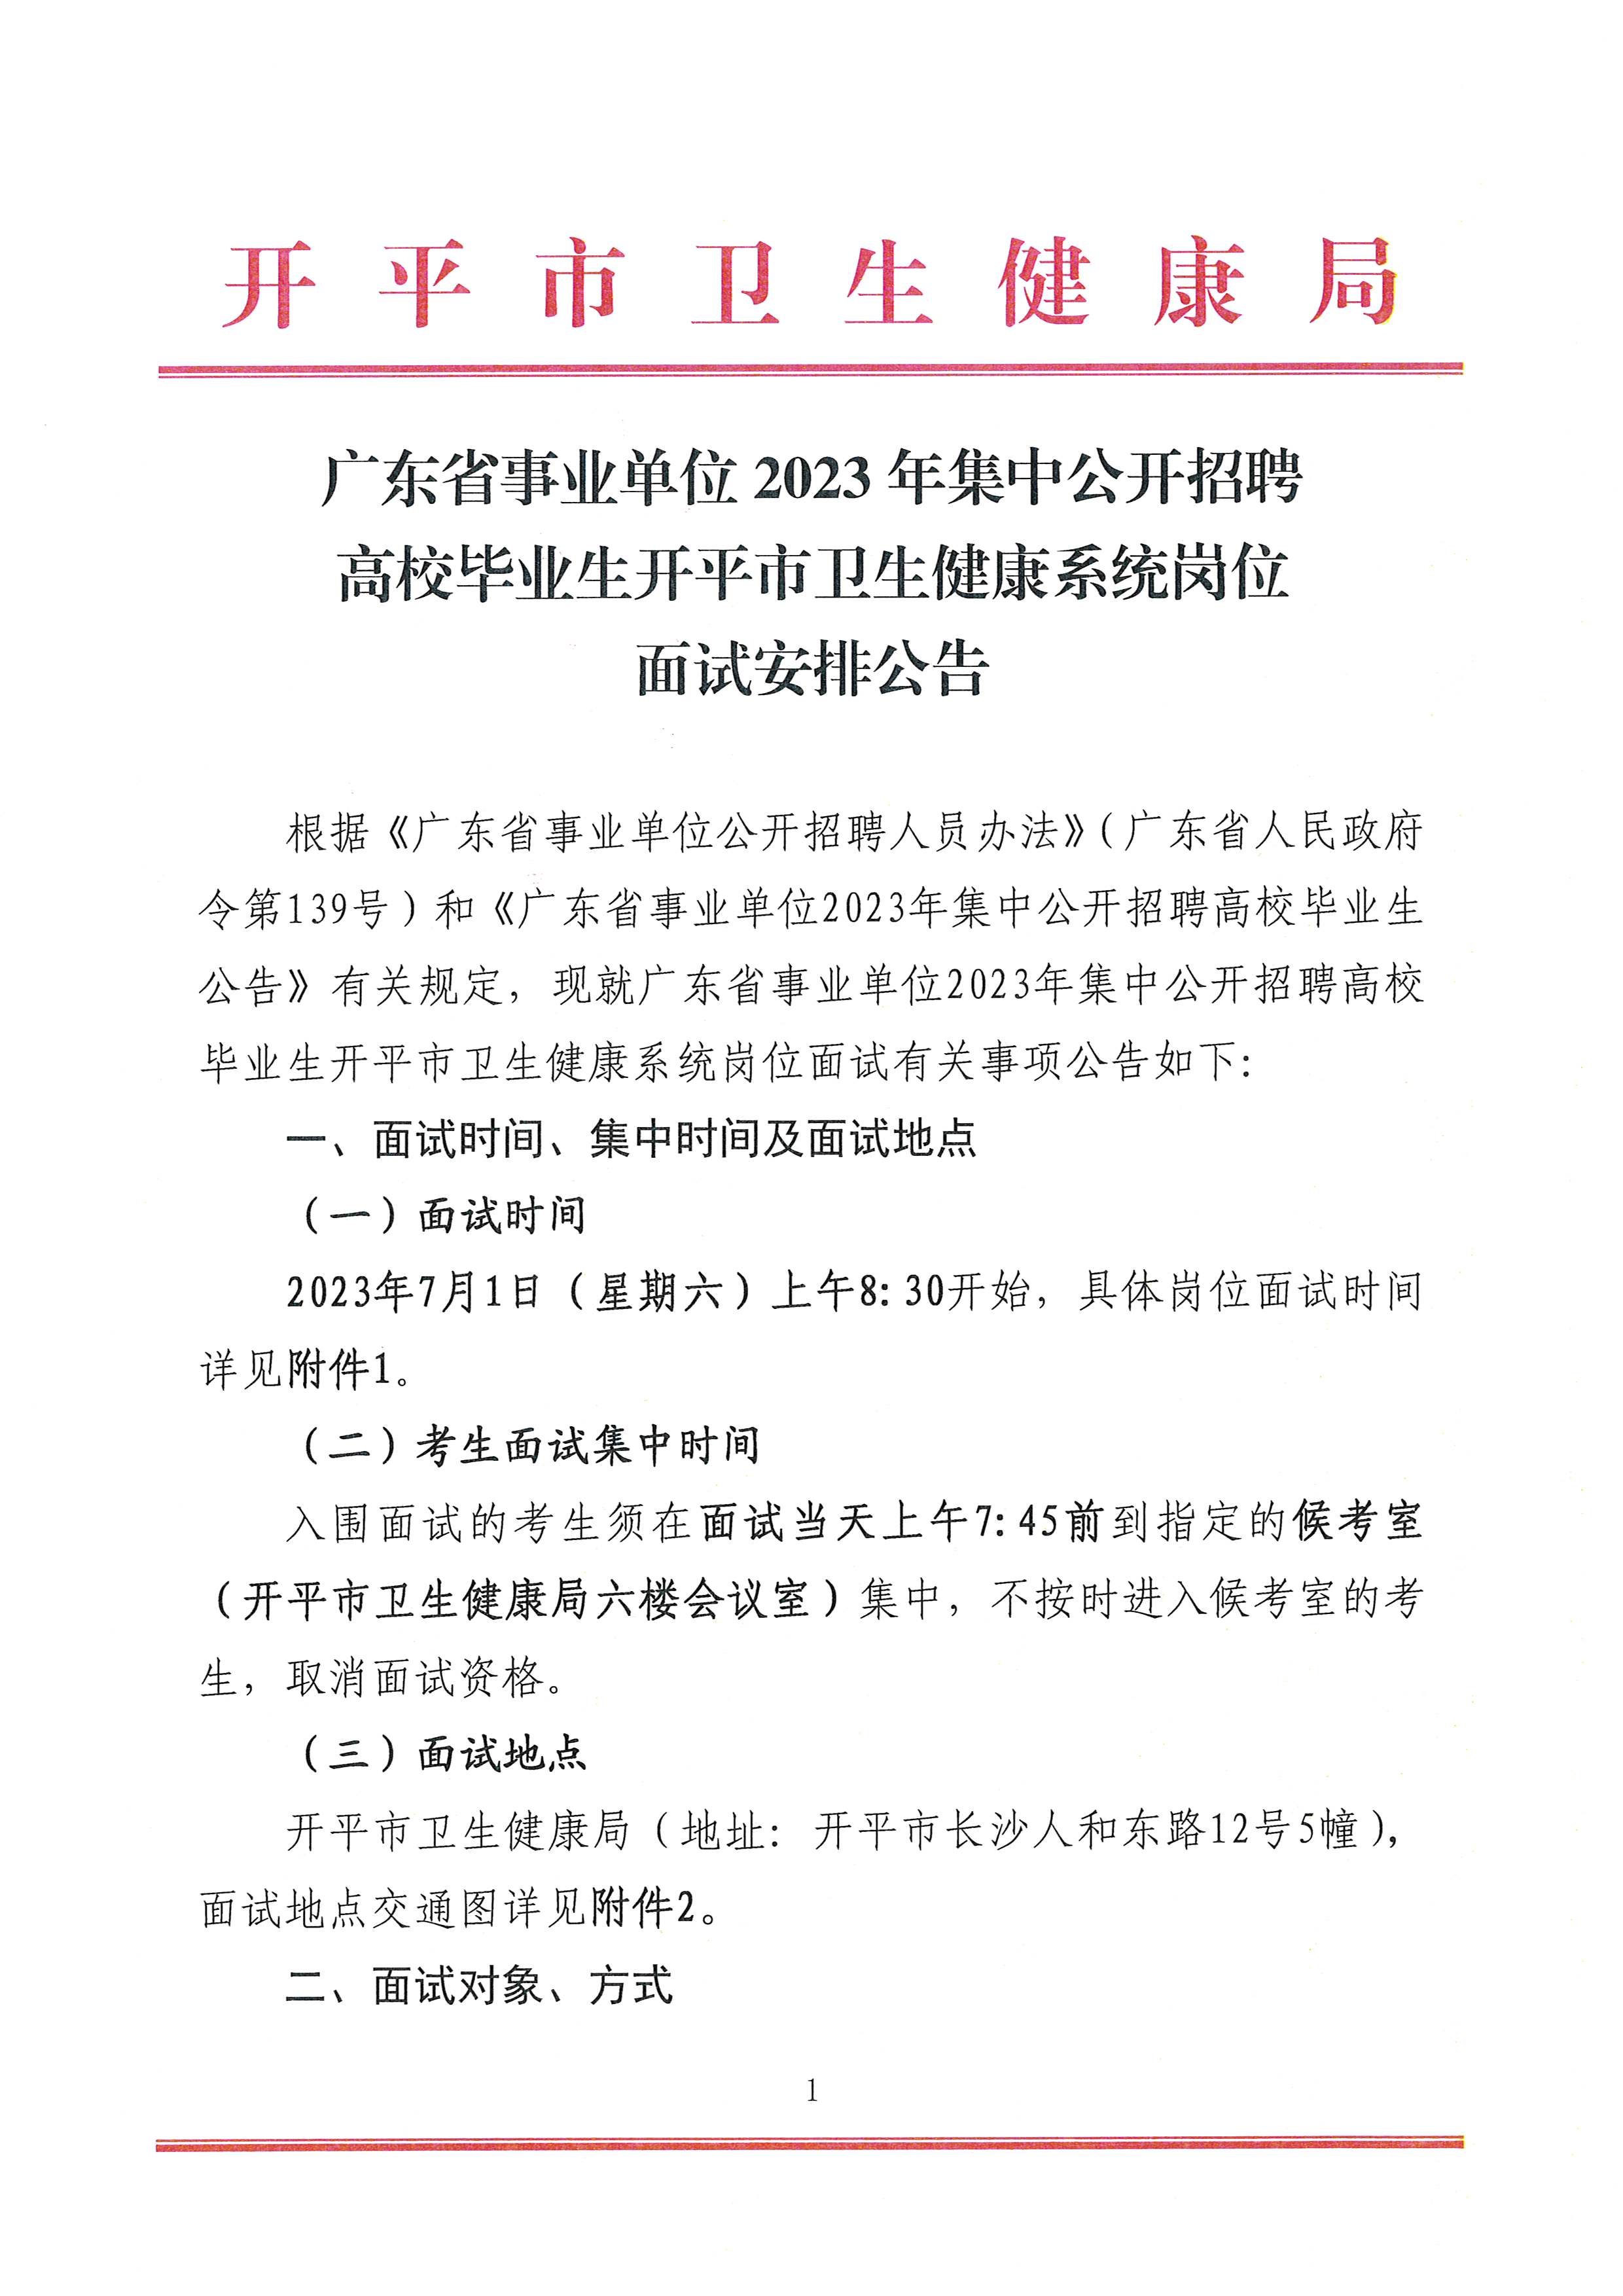 广东省事业单位2023年集中公开招聘高校毕业生开平市卫生健康系统岗位面试安排公告_页面_1.jpg